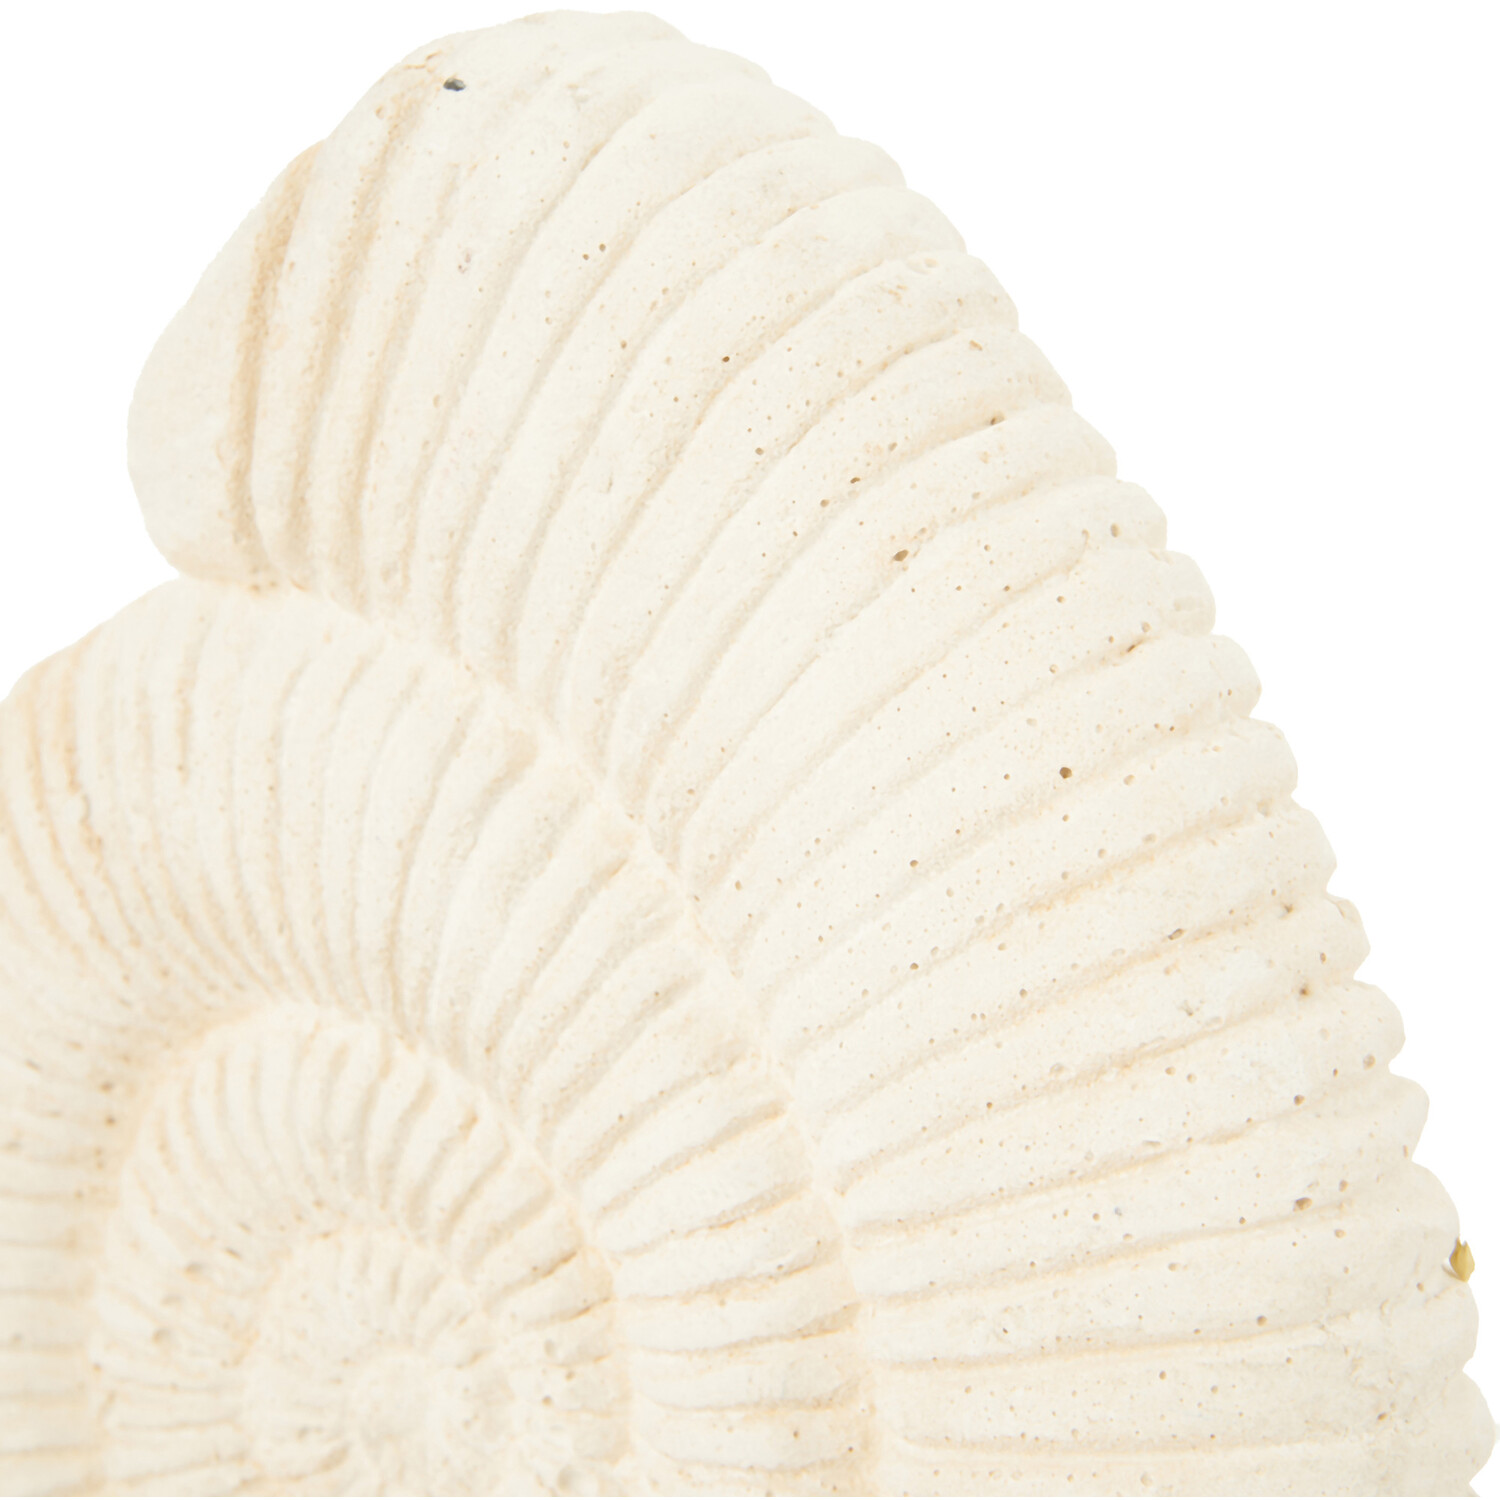 Mari Shell Ornament - White Image 3